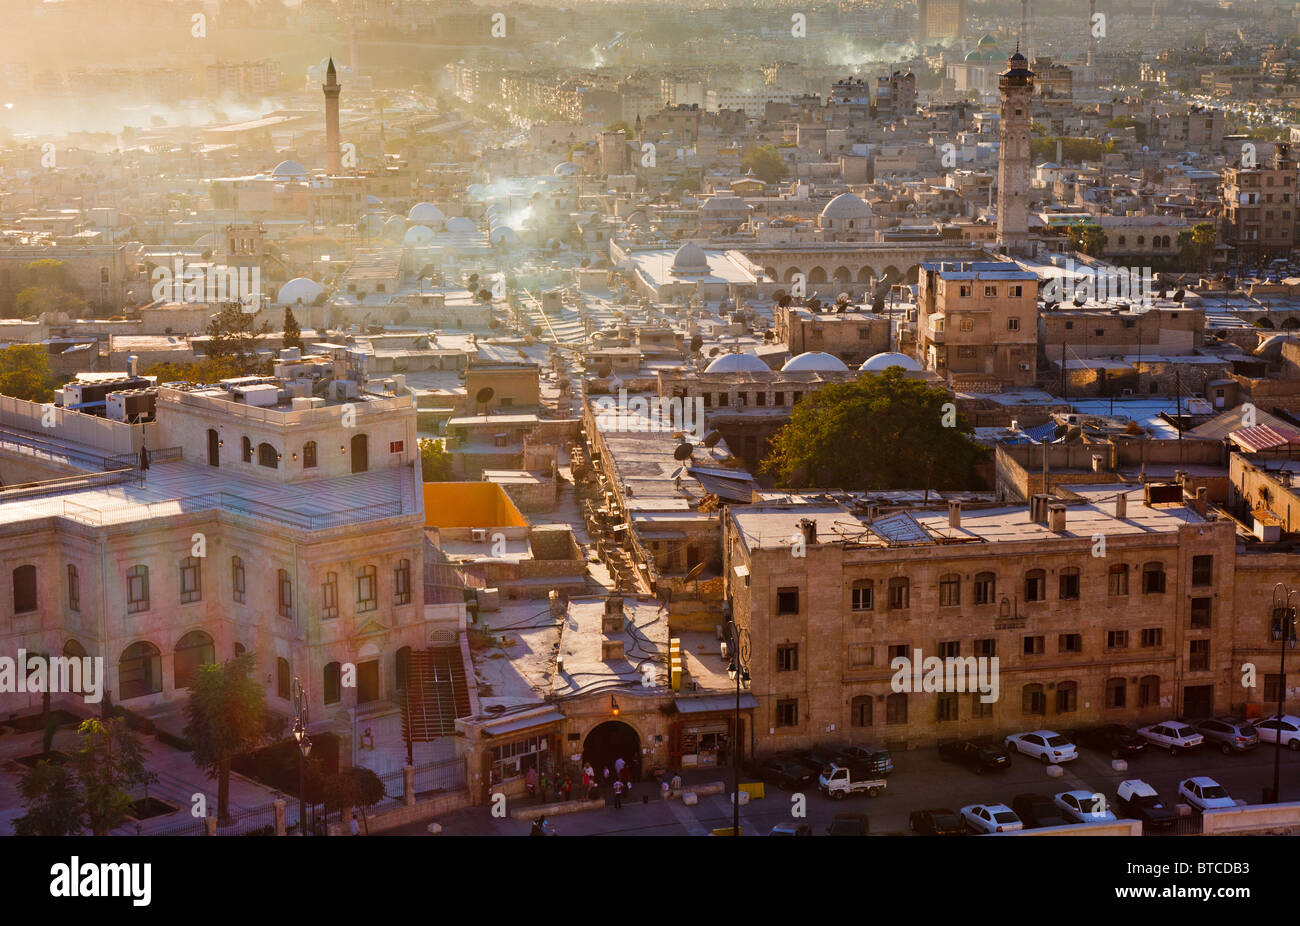 Panorama de la vieille ville d'Alep, Syrie, en vue de la citadelle au lever du soleil Banque D'Images